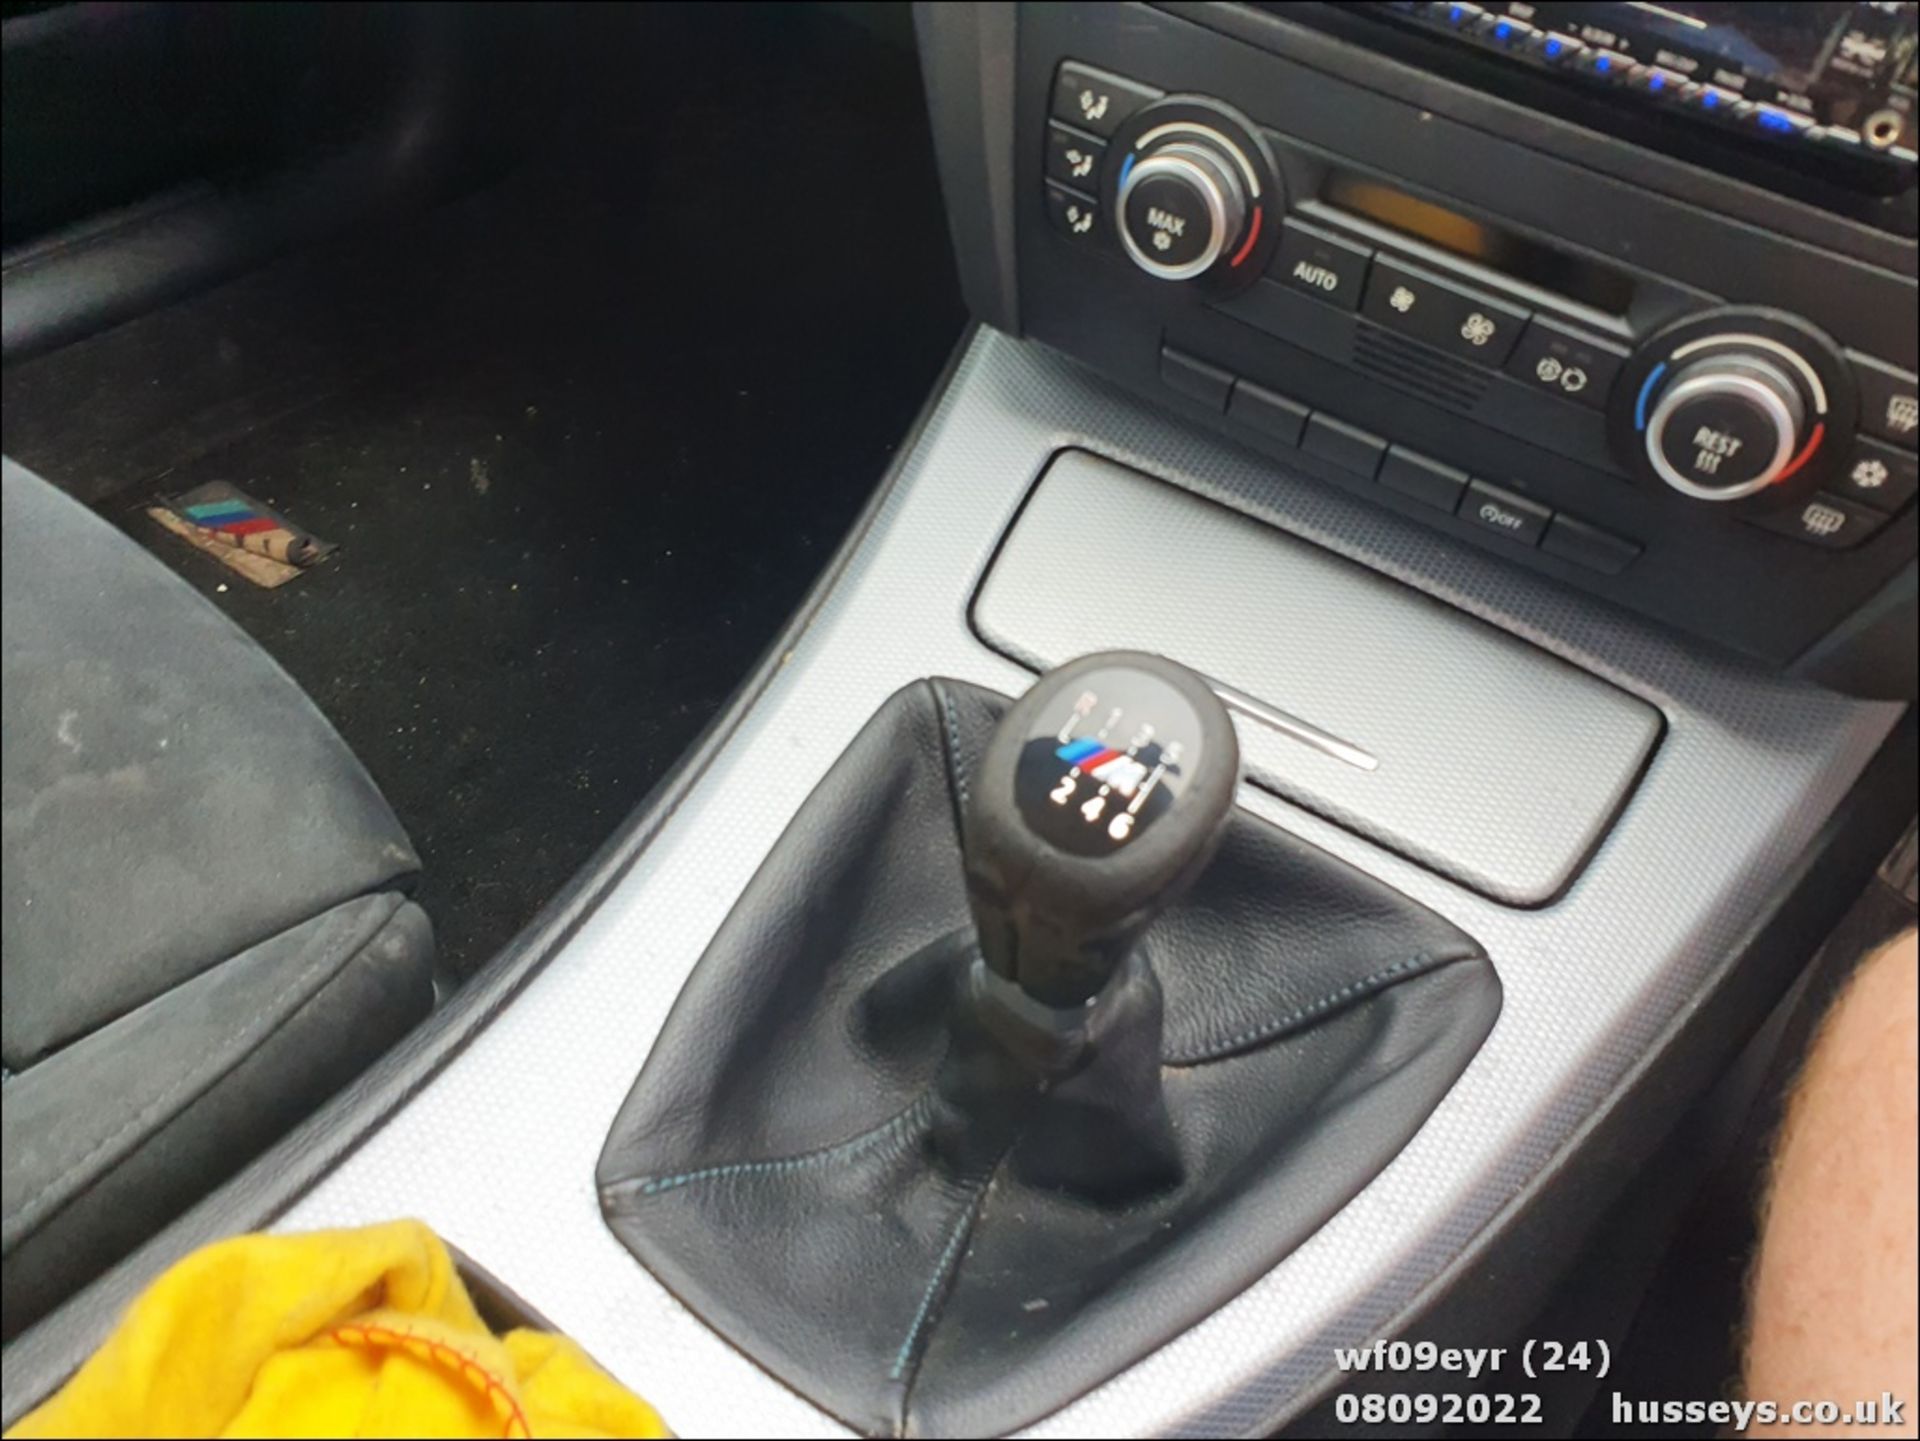 09/09 BMW 318I M SPORT TOURING - 1995cc 5dr Estate (Blue, 122k) - Image 24 of 47